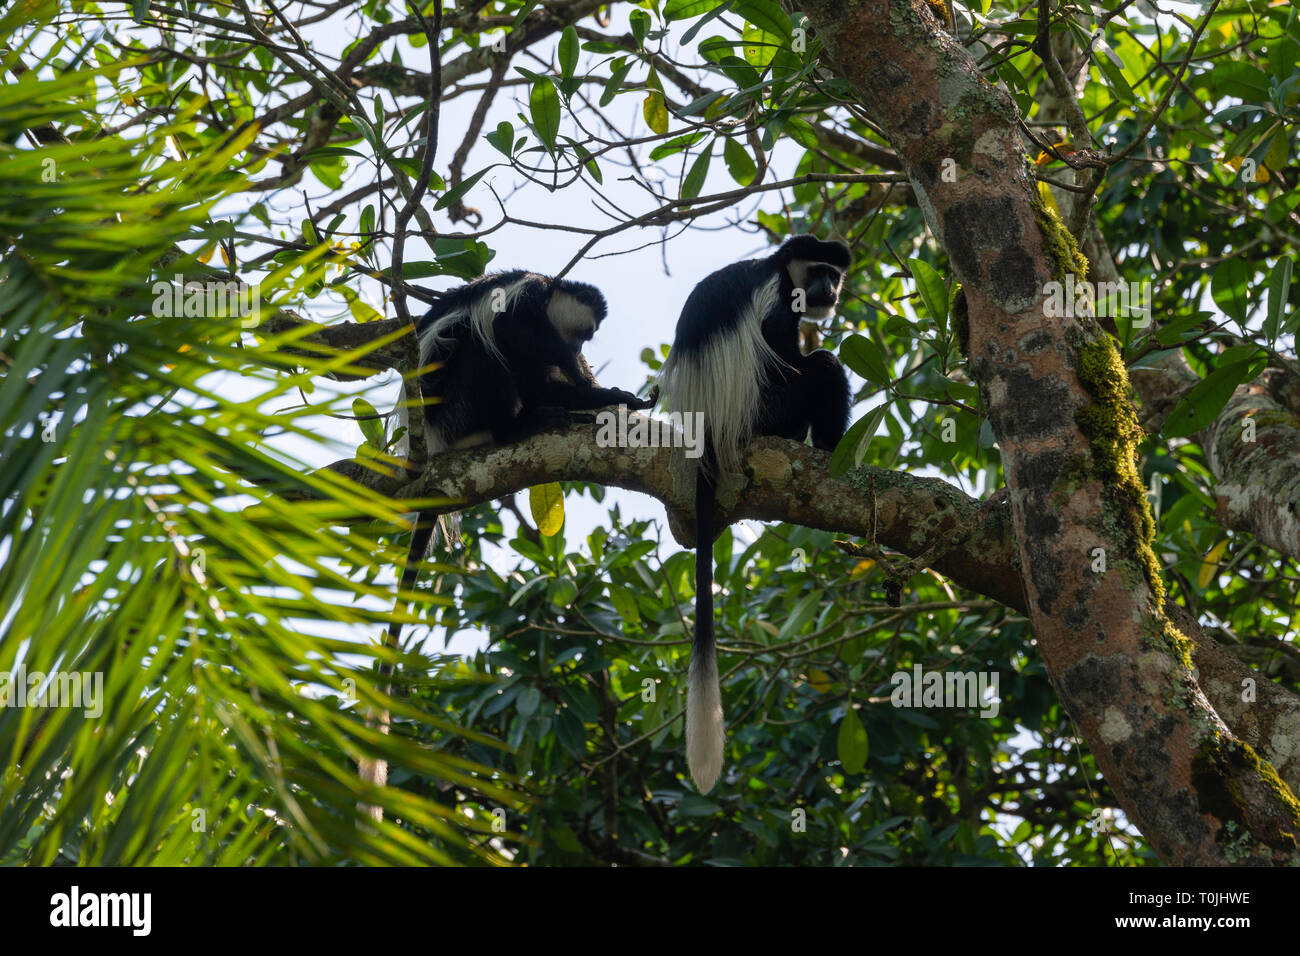 Pair of black and white colobus monkeys (Colobus guereza), Bigodi Wetland Sanctuary, Magombe Swamp, South West Uganda, East Africa Stock Photo